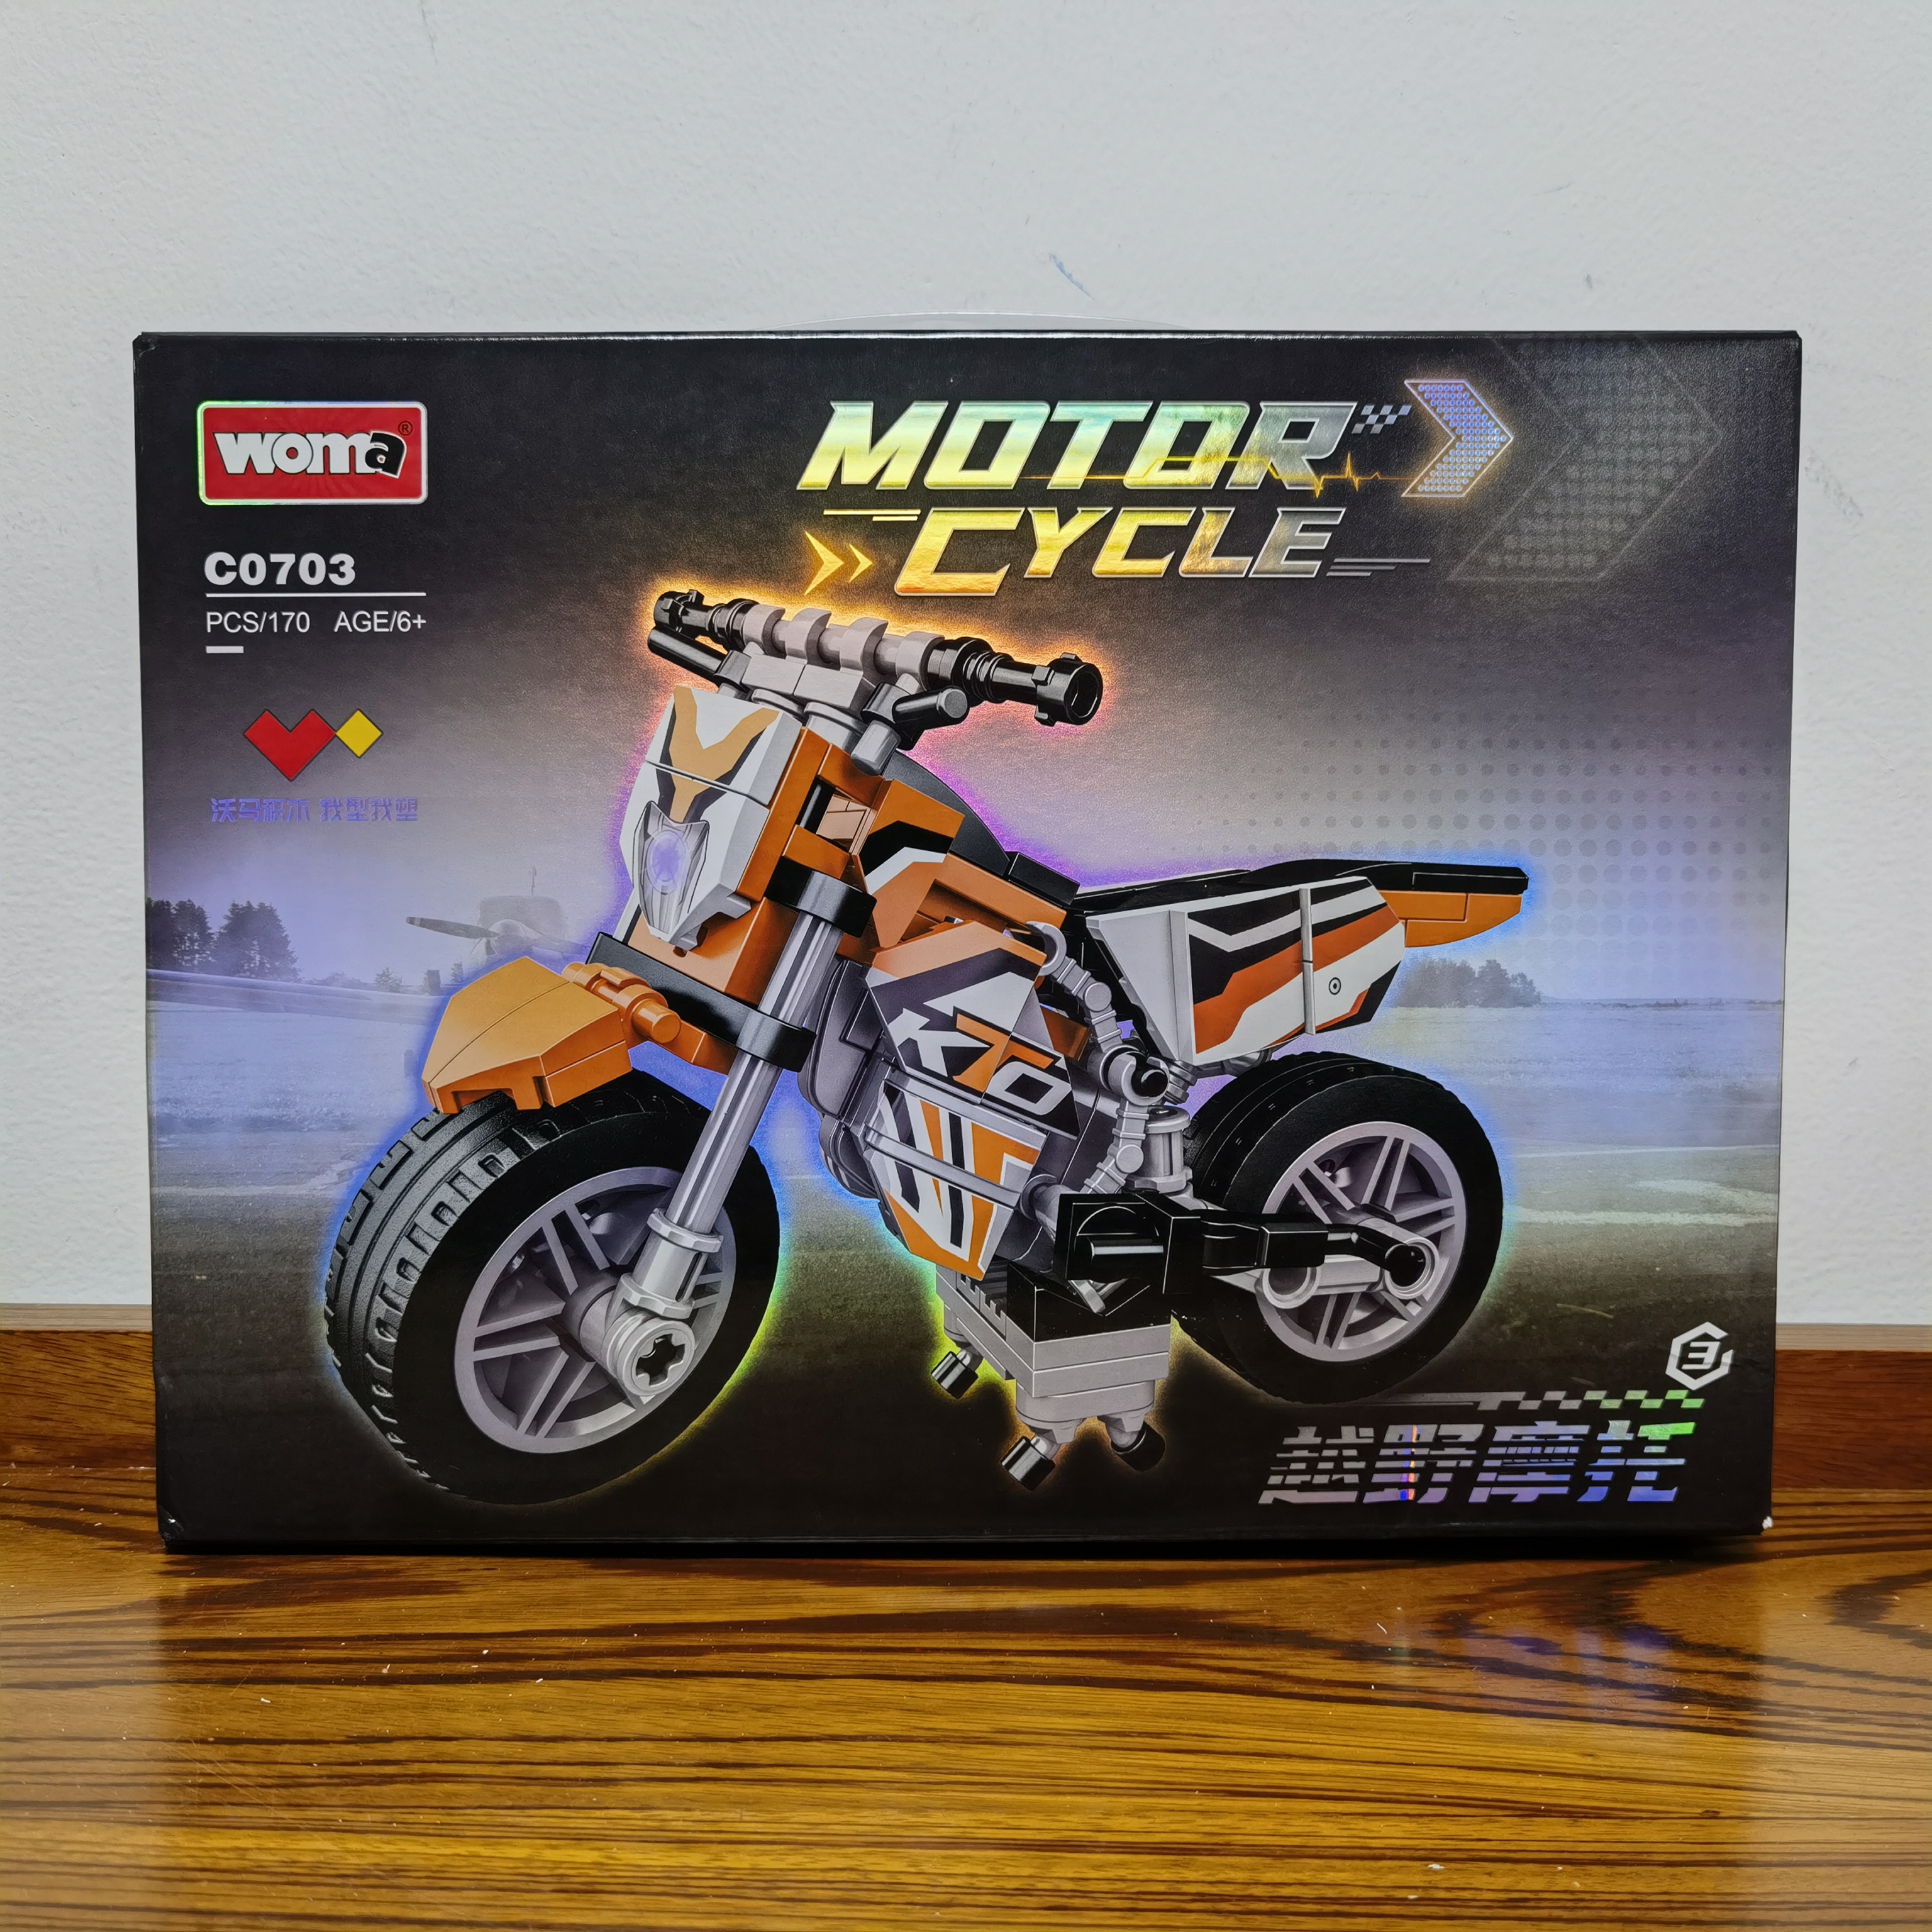 沃马赛车系列越野摩托车跑车礼物模型拼装积木玩具C0703越野摩托